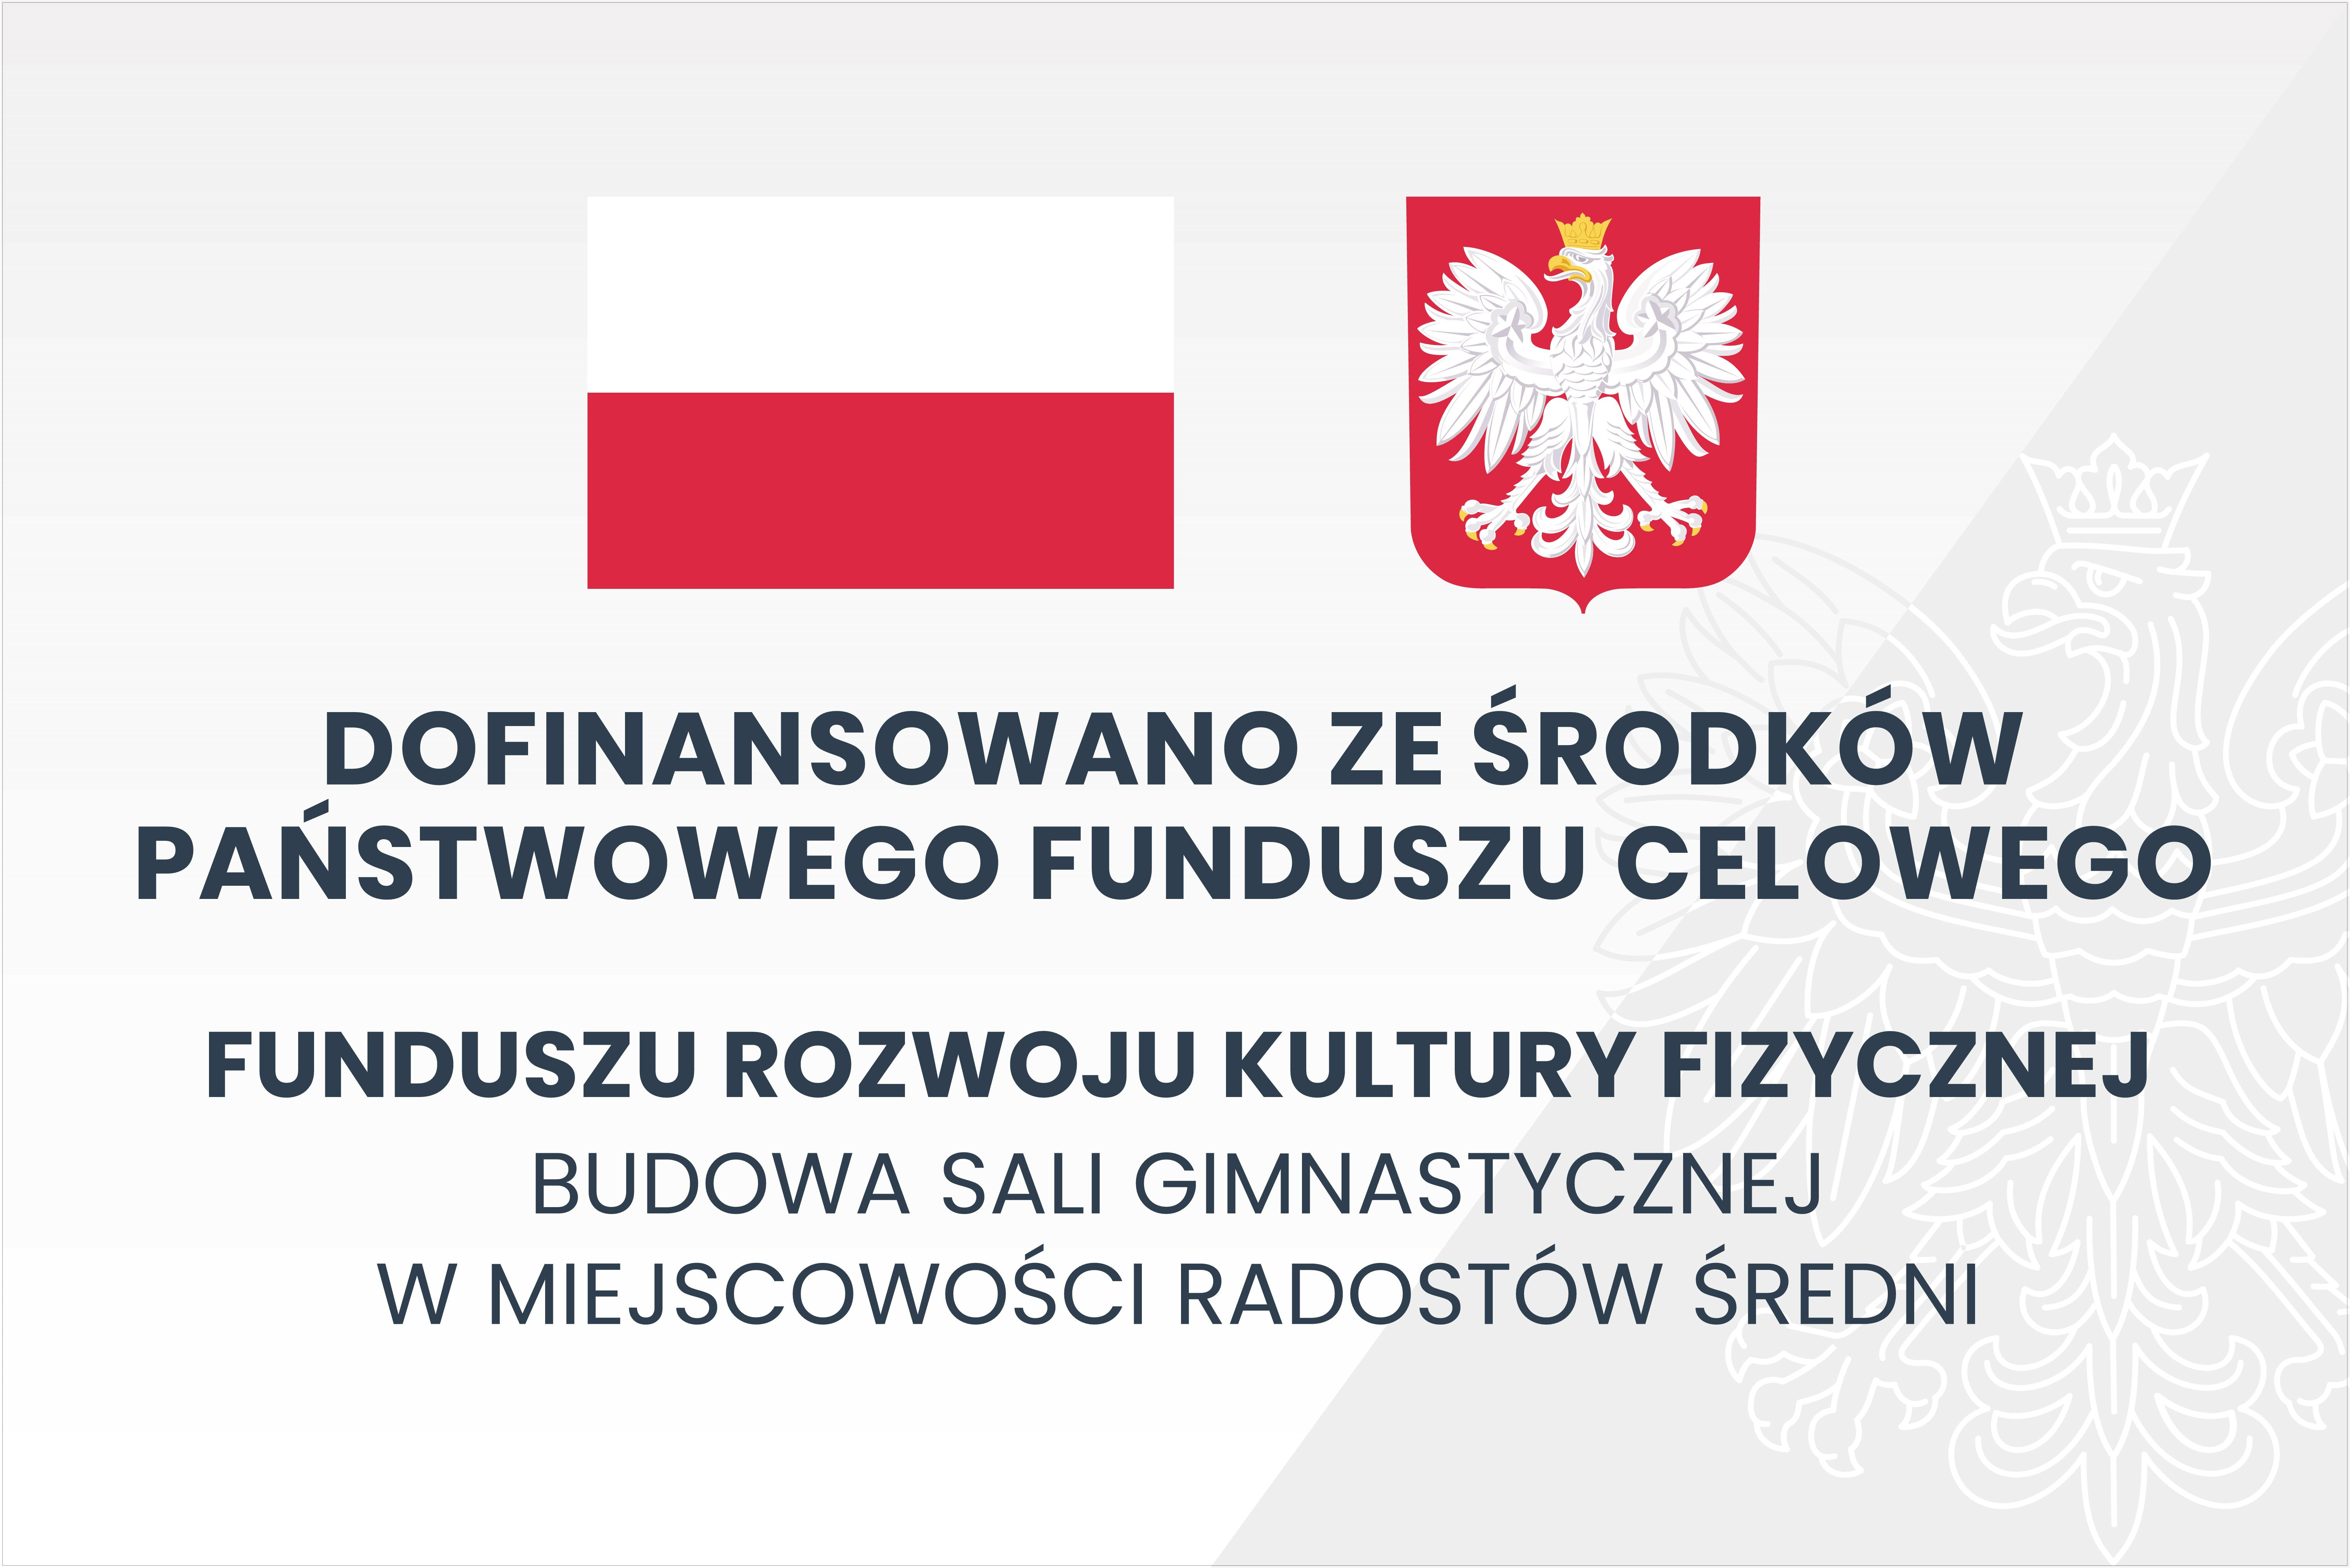 Rozpoczęto realizację inwestycji ze środków Funduszu Rozwoju Kultury Fizycznej w ramach Programu Sportowa Polska- Program Rozwoju Lokalnej Infrastruktury Sportowej